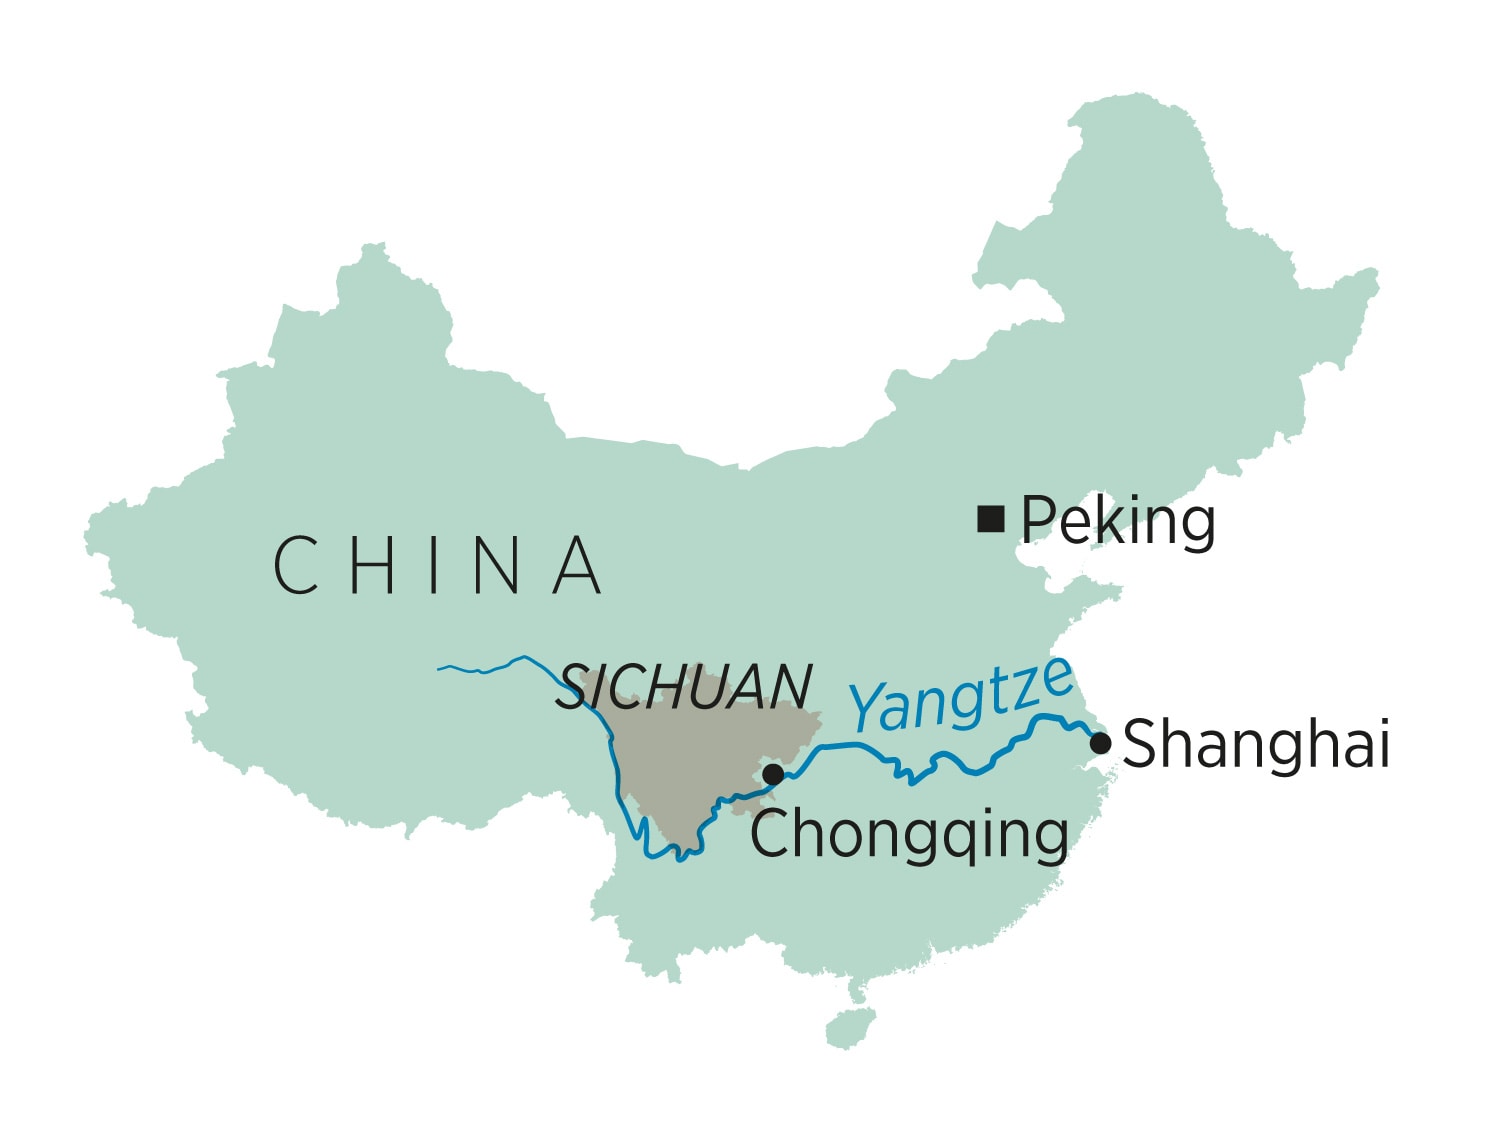 Een machtige rivier die plots meters lager staat en fabrieken die stilvallen: ‘Ergste hittegolf ooit’ in China